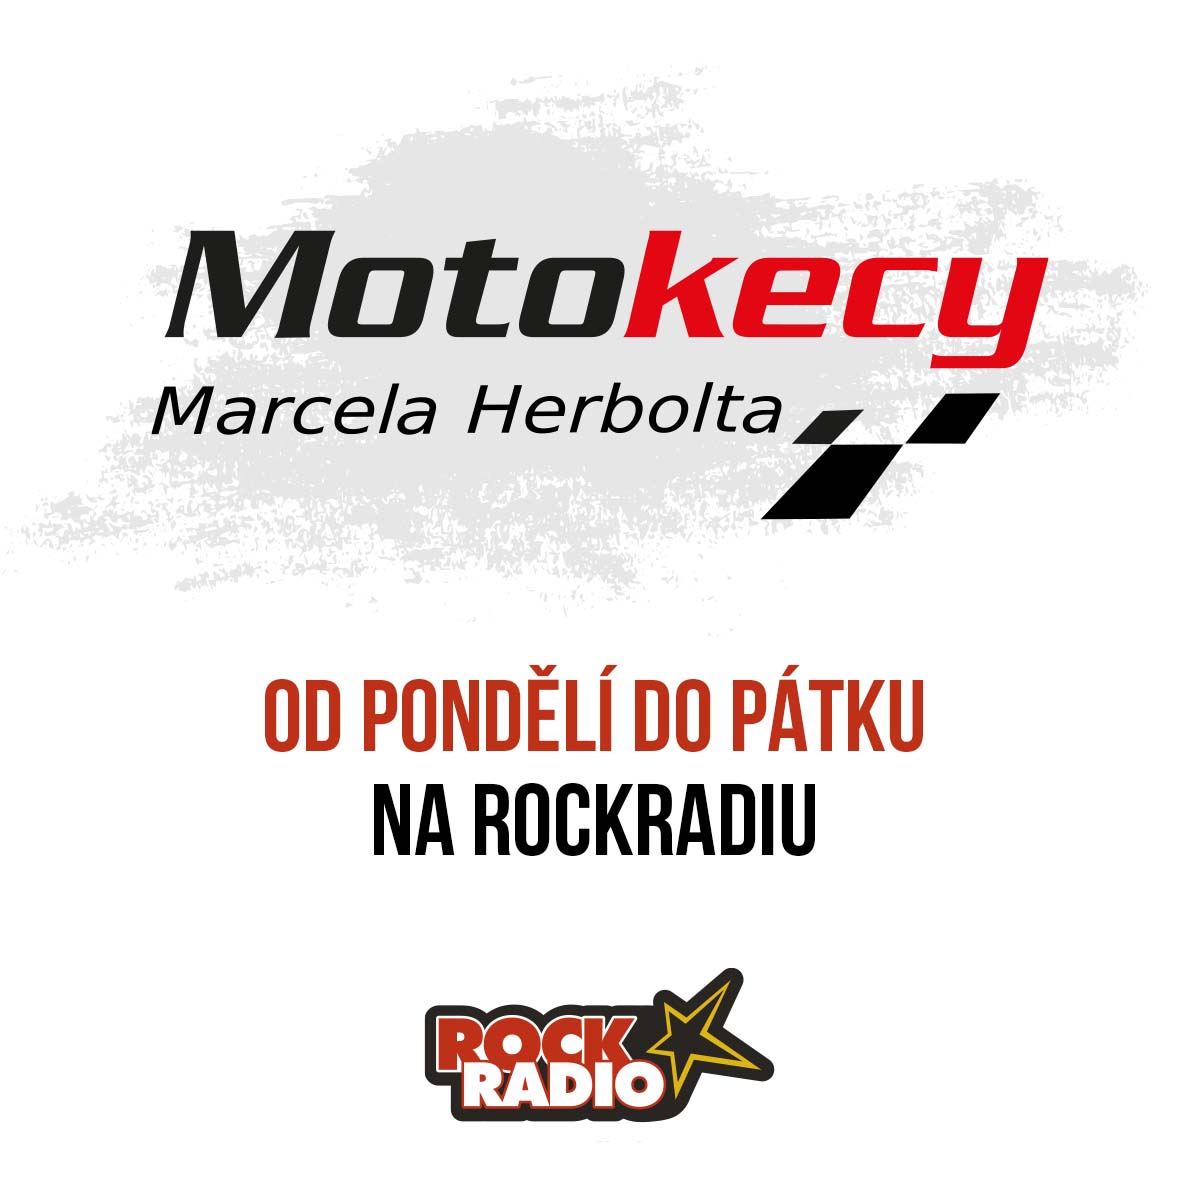 Motokecy Marcela Herbolta na pátek 29. září